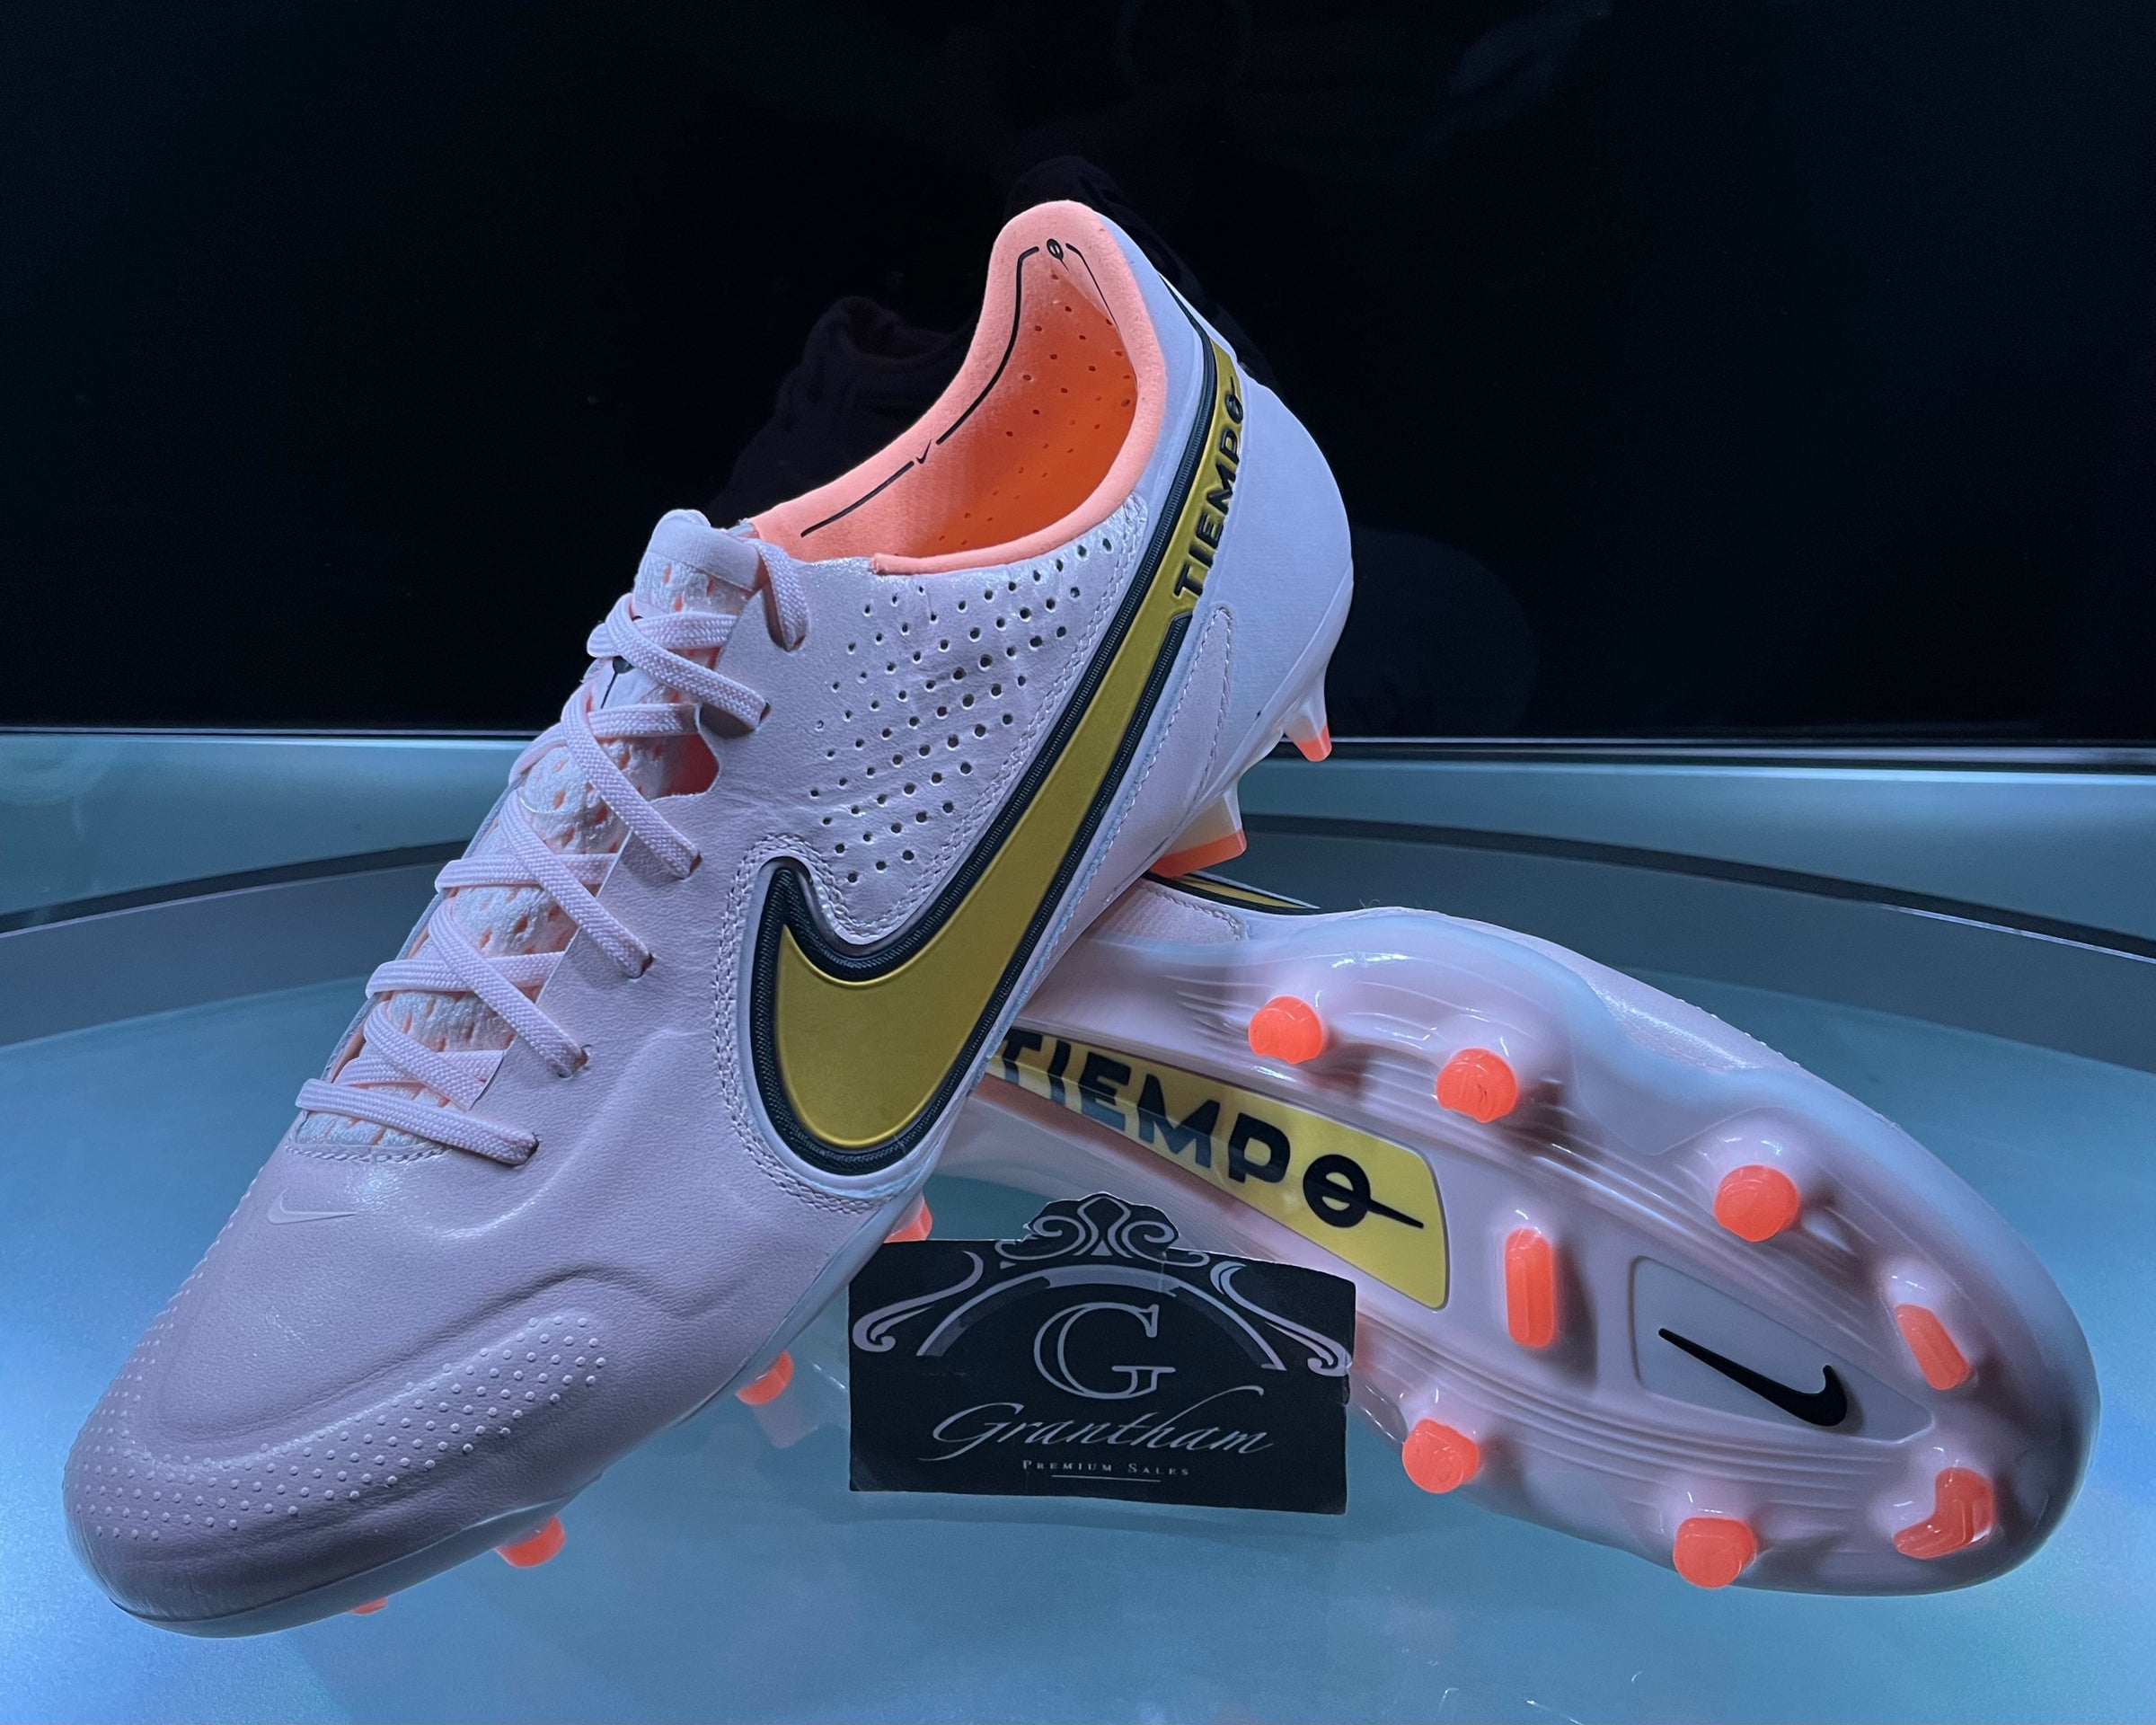 Feudo Lágrimas tema ELITE Nike Tiempo Legend 9 FG - UK 8.5 / EU 43 - RRP £215 | GPS Football.com